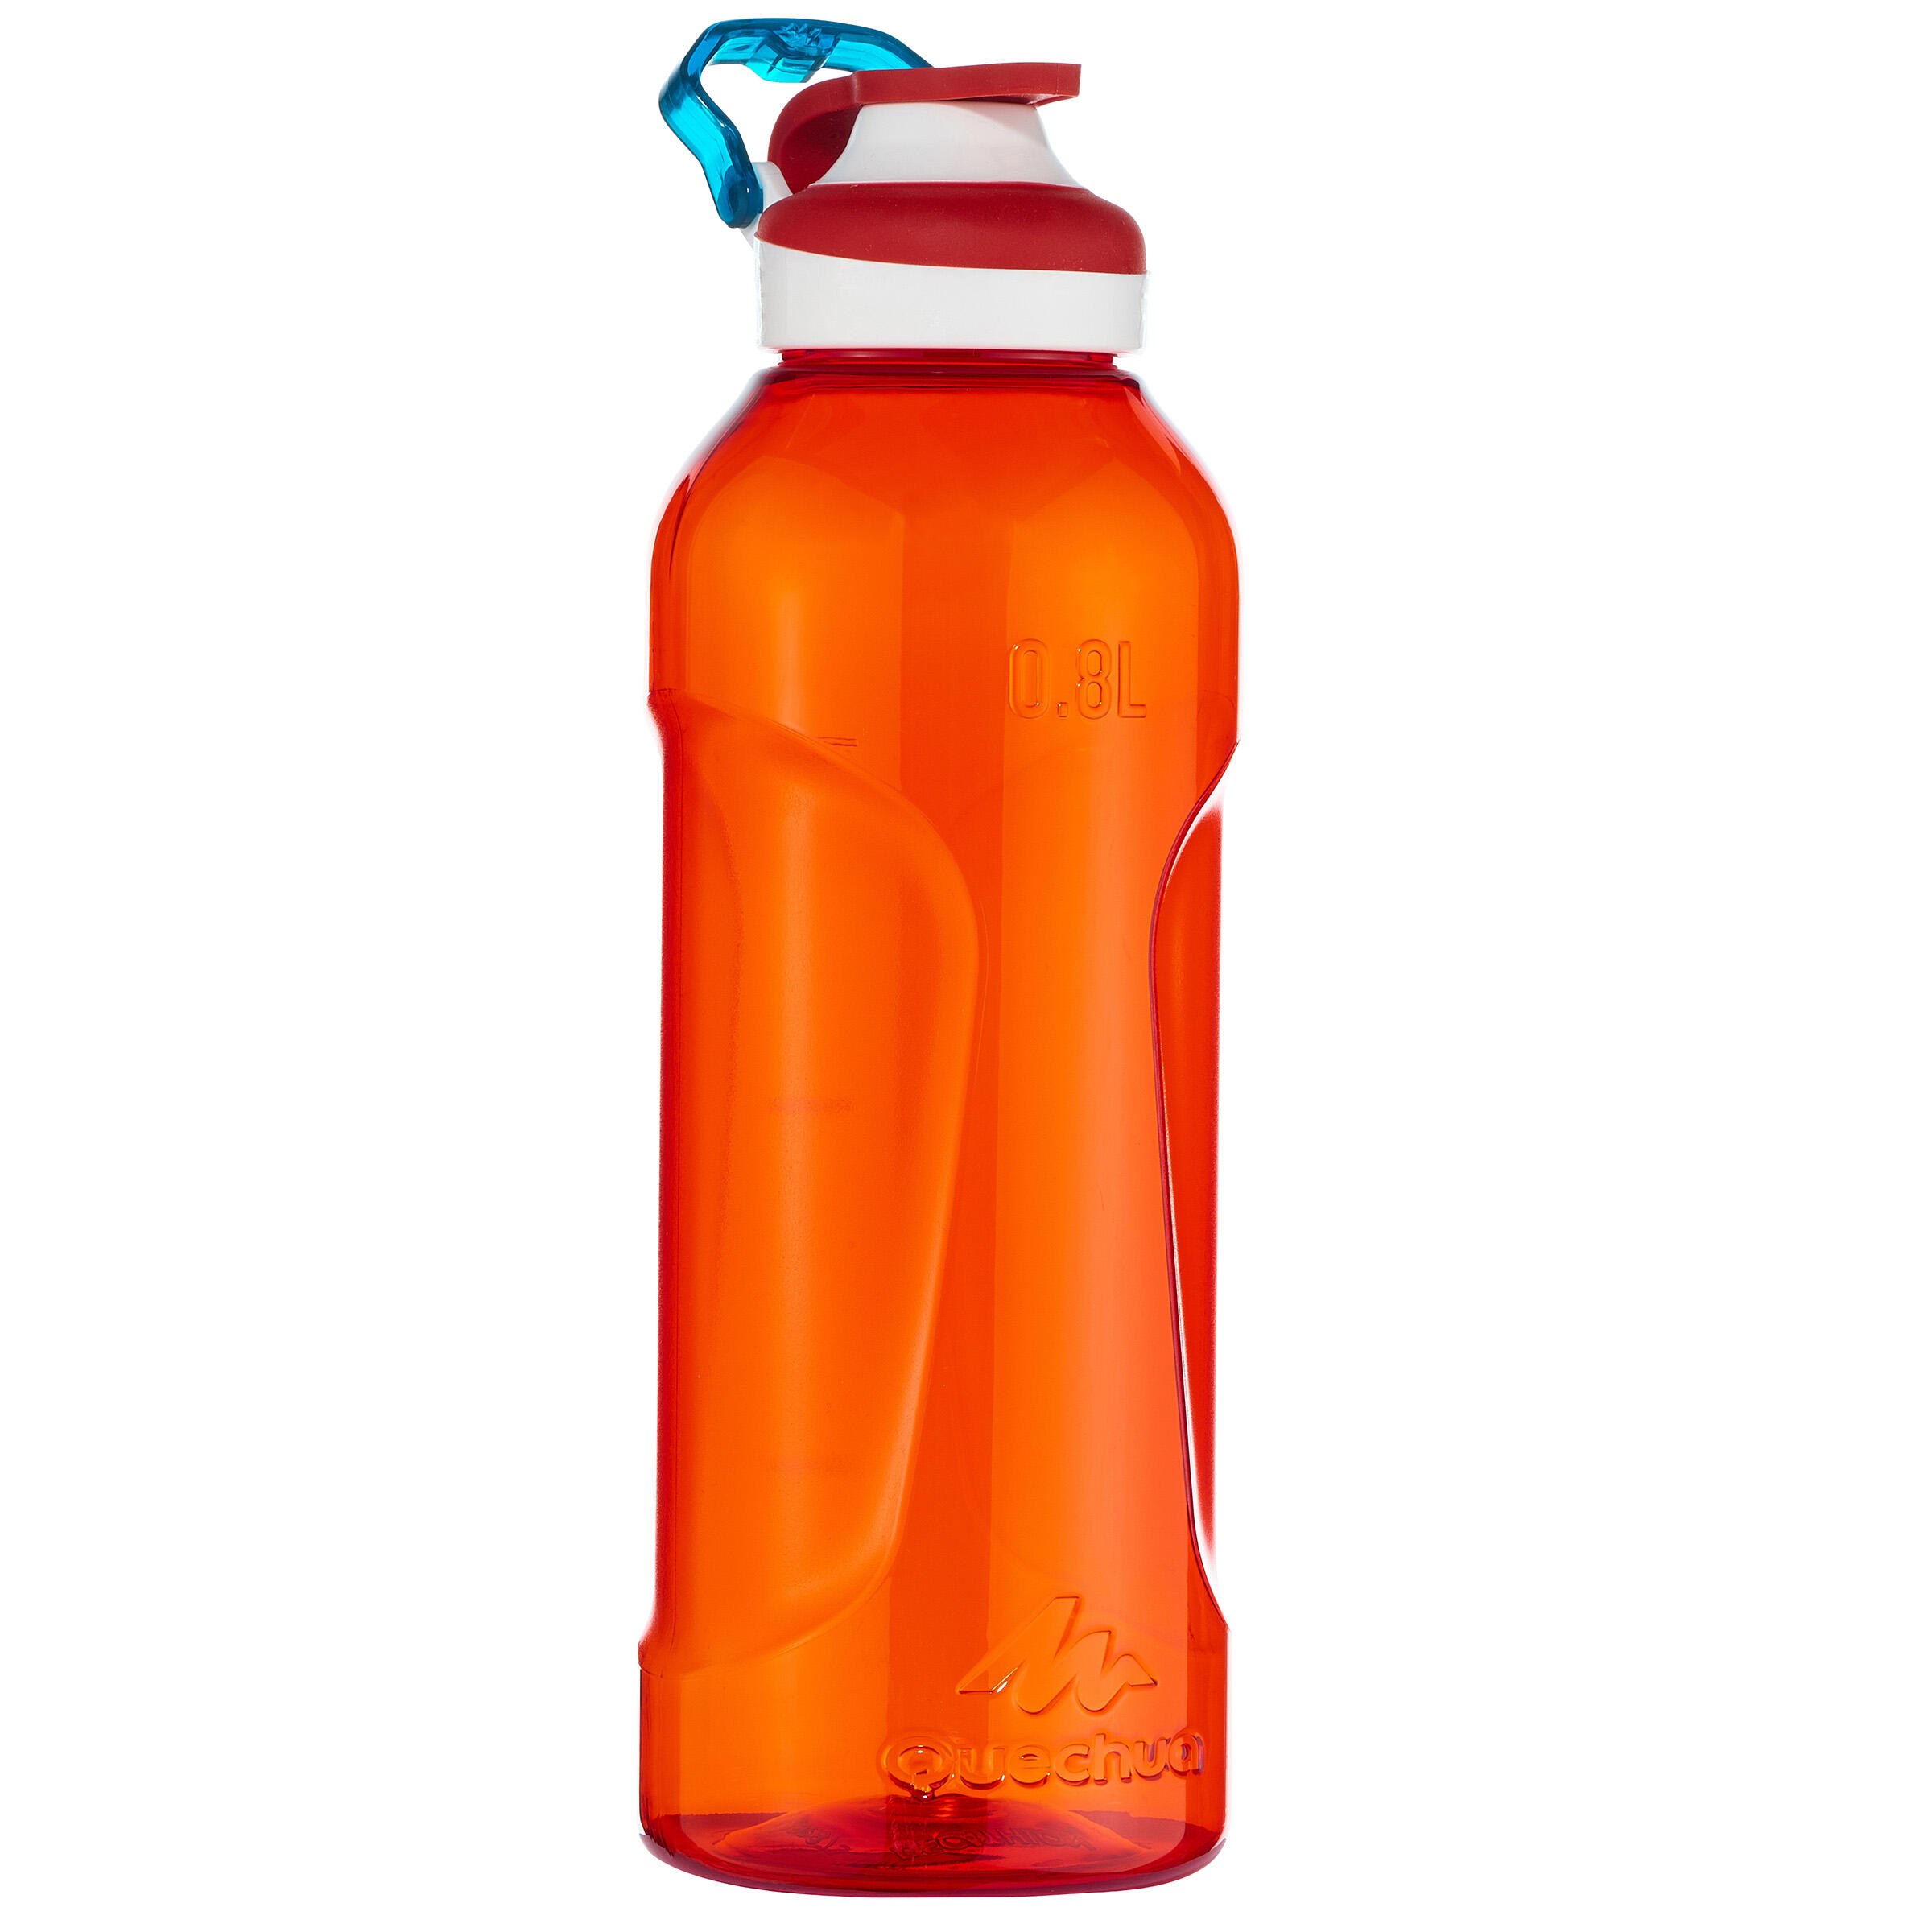 decathlon 1.5 litre bottle